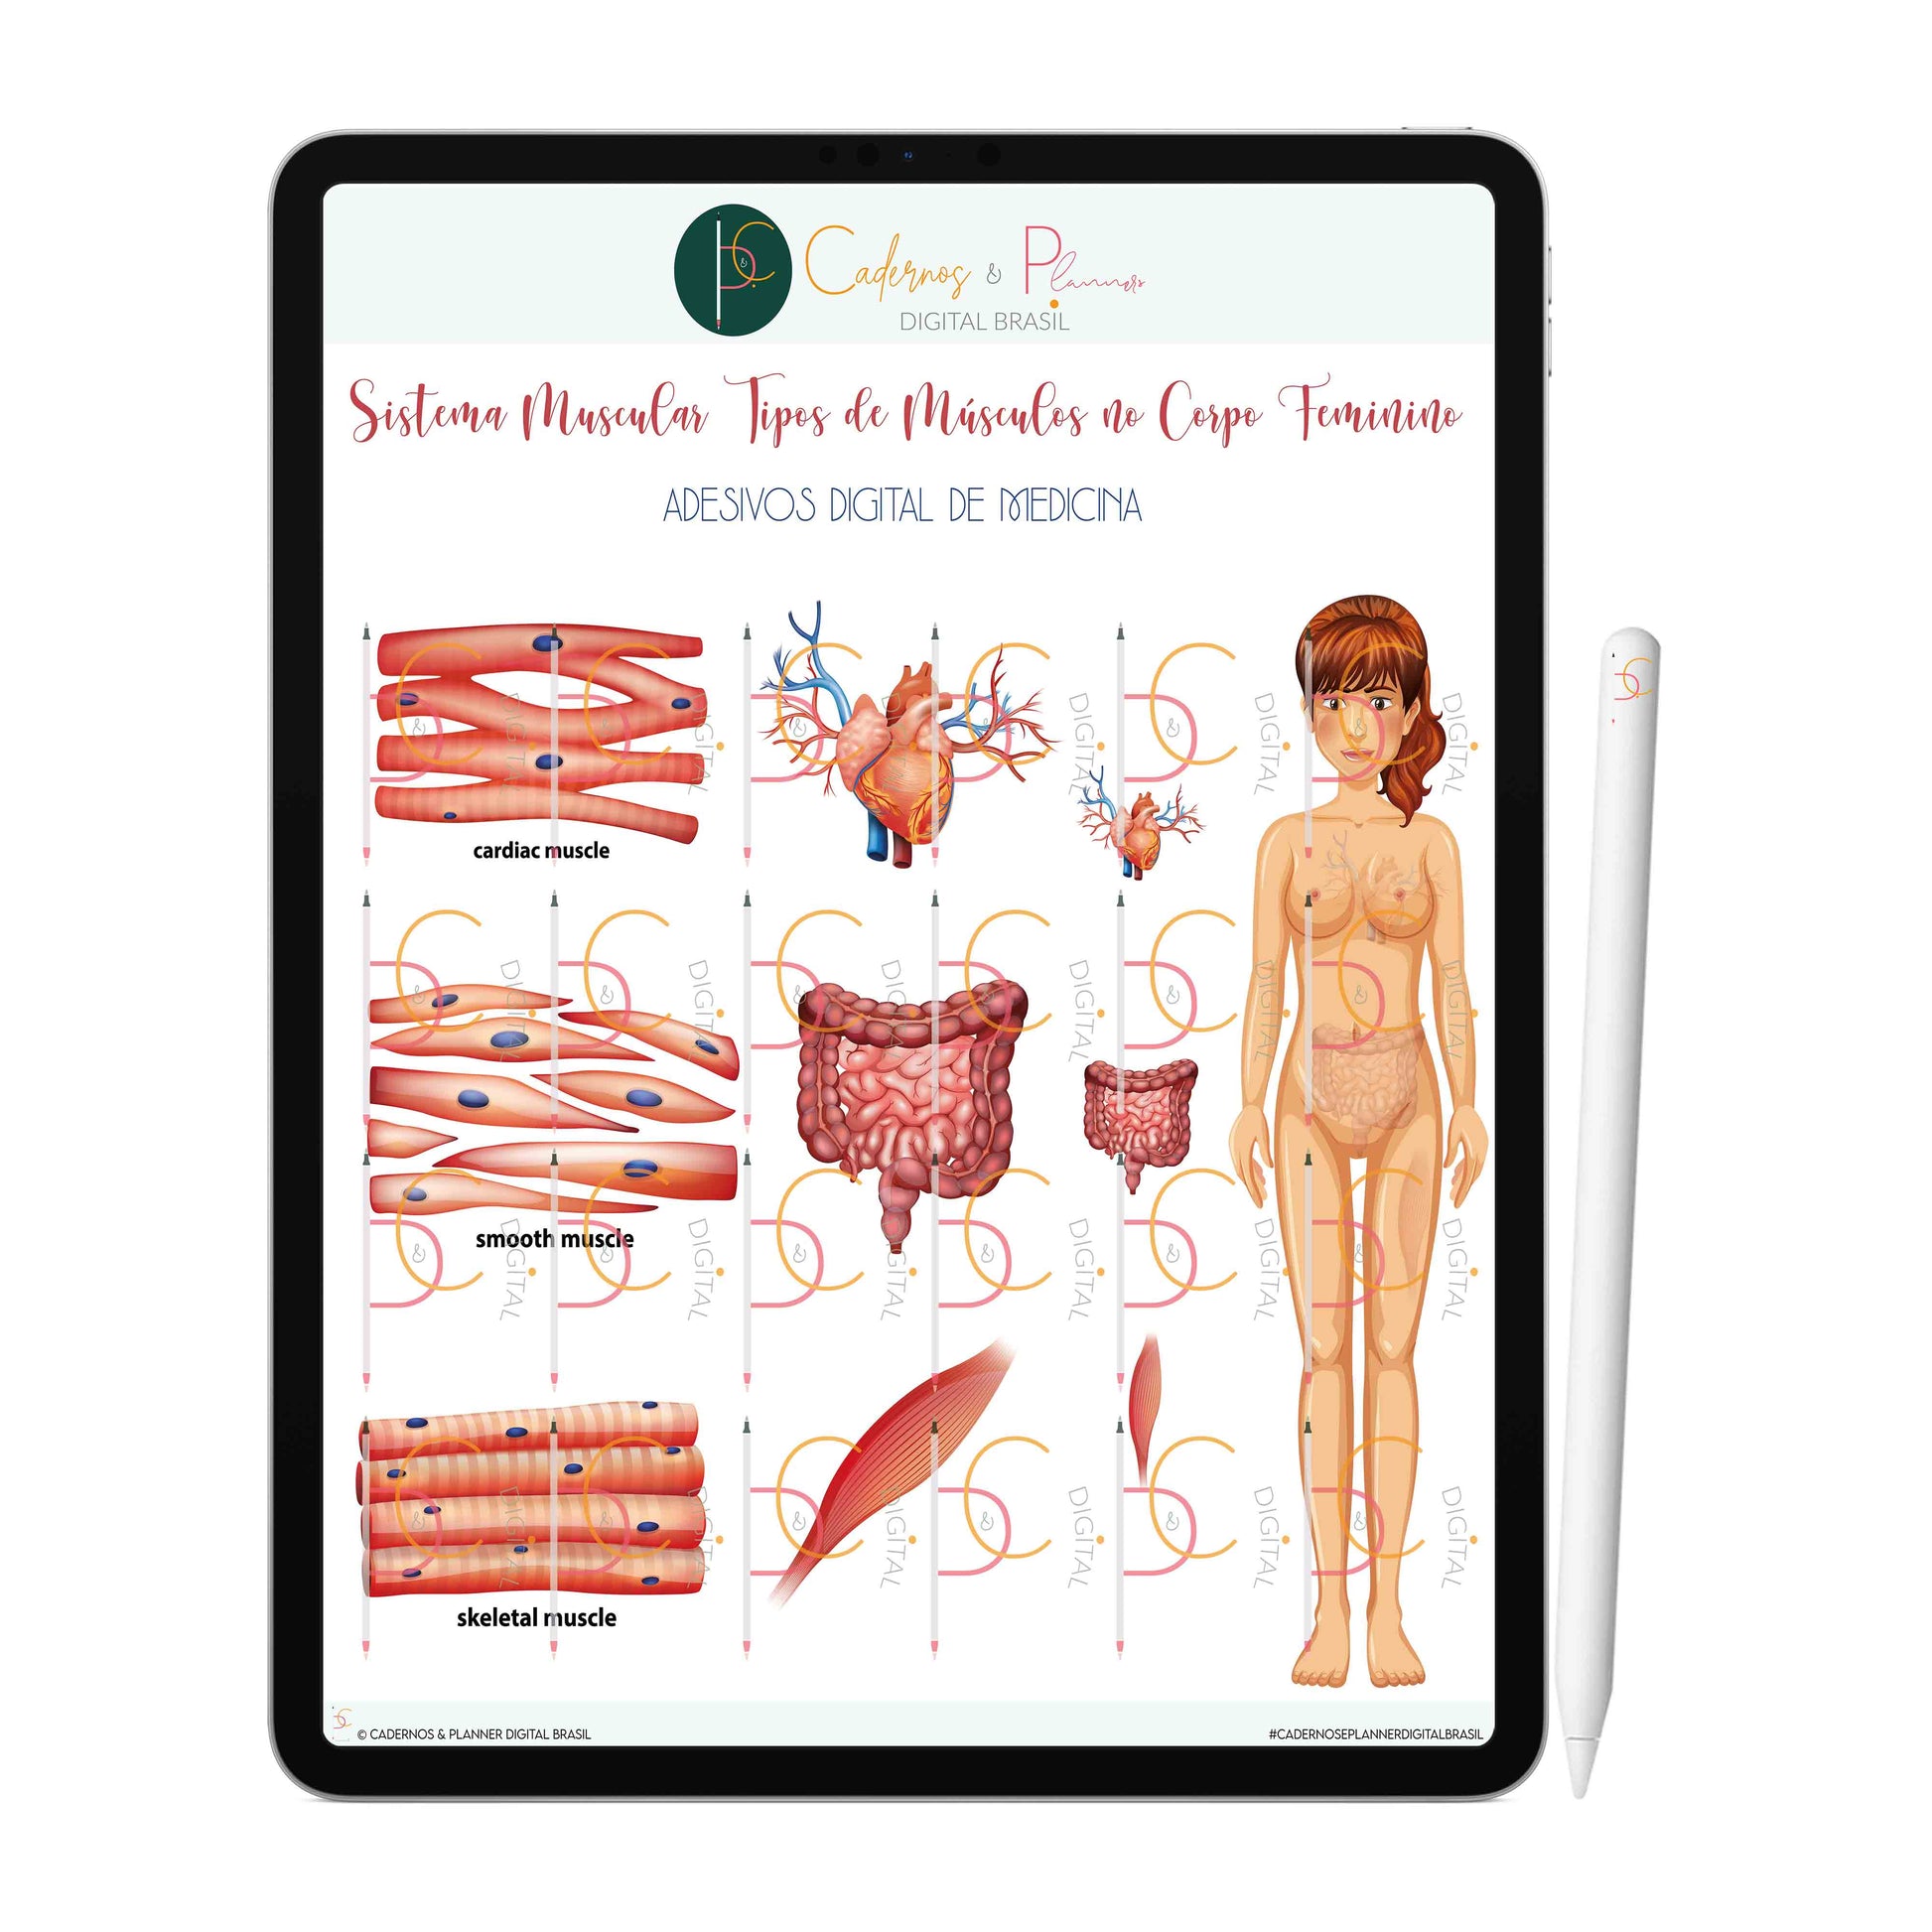 Adesivos Stickers Digital de Medicina - Sistema Muscular Tipos de Músculos no Corpo Feminino • iPad Tablet • GoodNotes Noteshelf